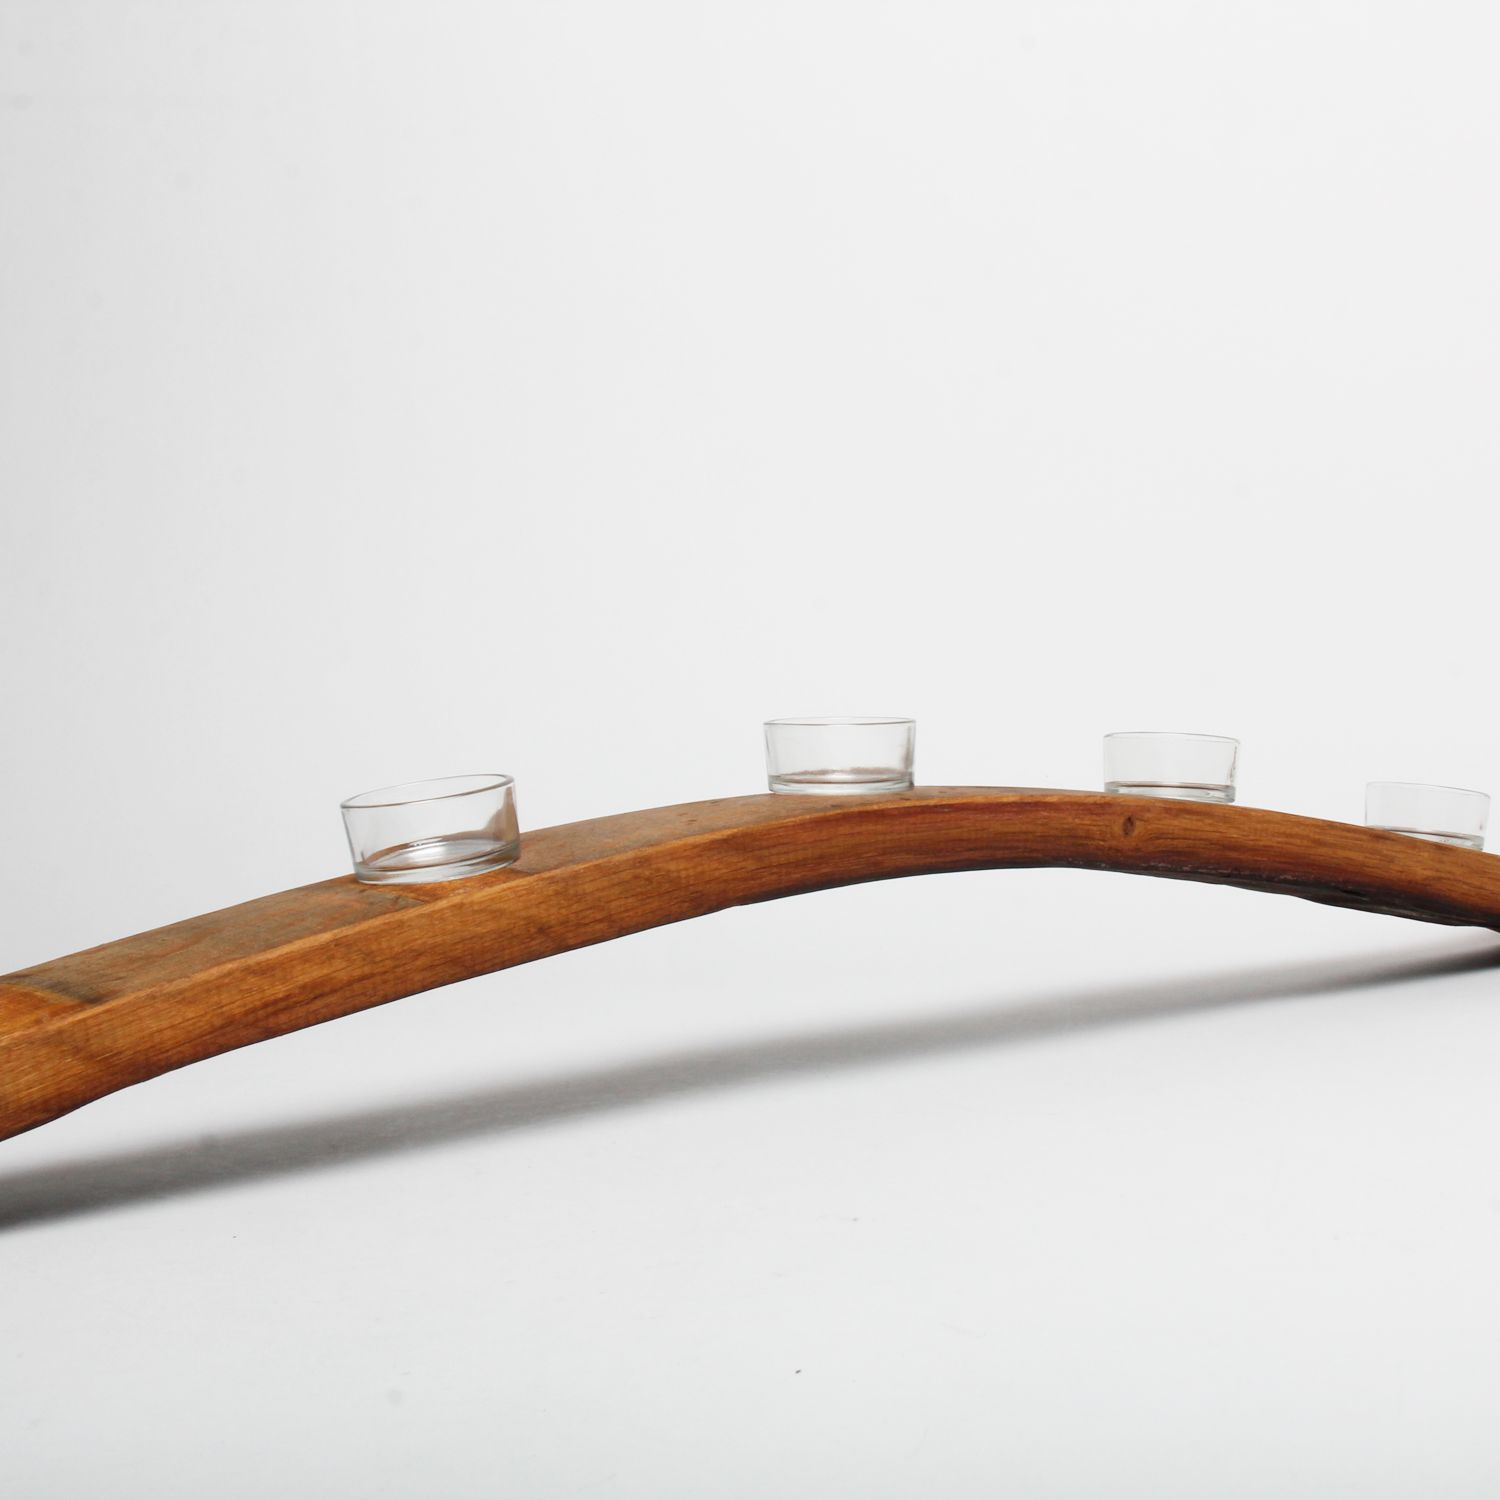 Wineplanks: Candleholder Full Product Image 3 of 3